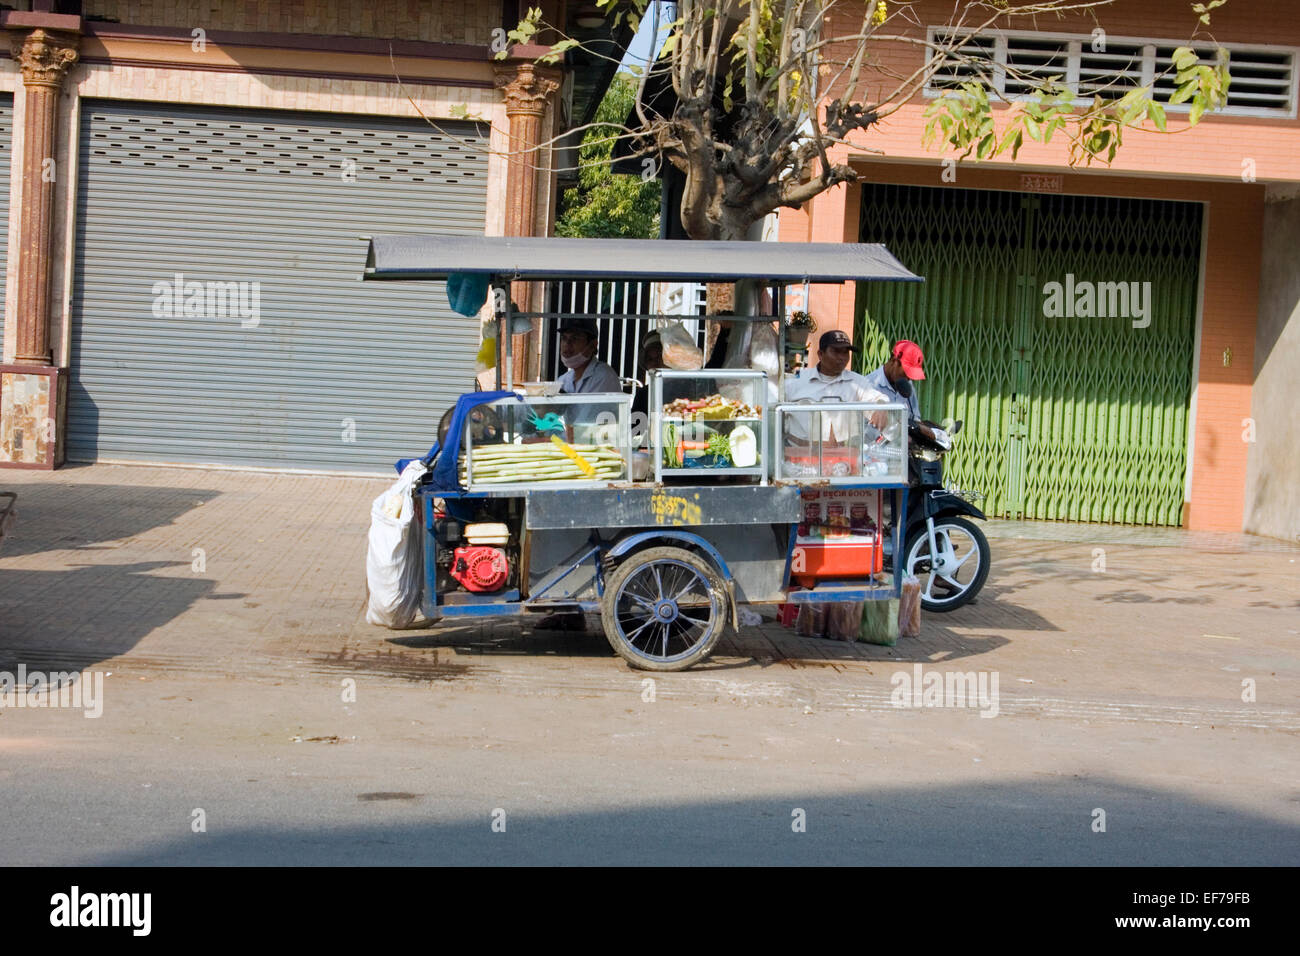 Ein mobile Küche Wagen parkt auf einer Stadtstraße in Kampong Cham, Kambodscha. Stockfoto